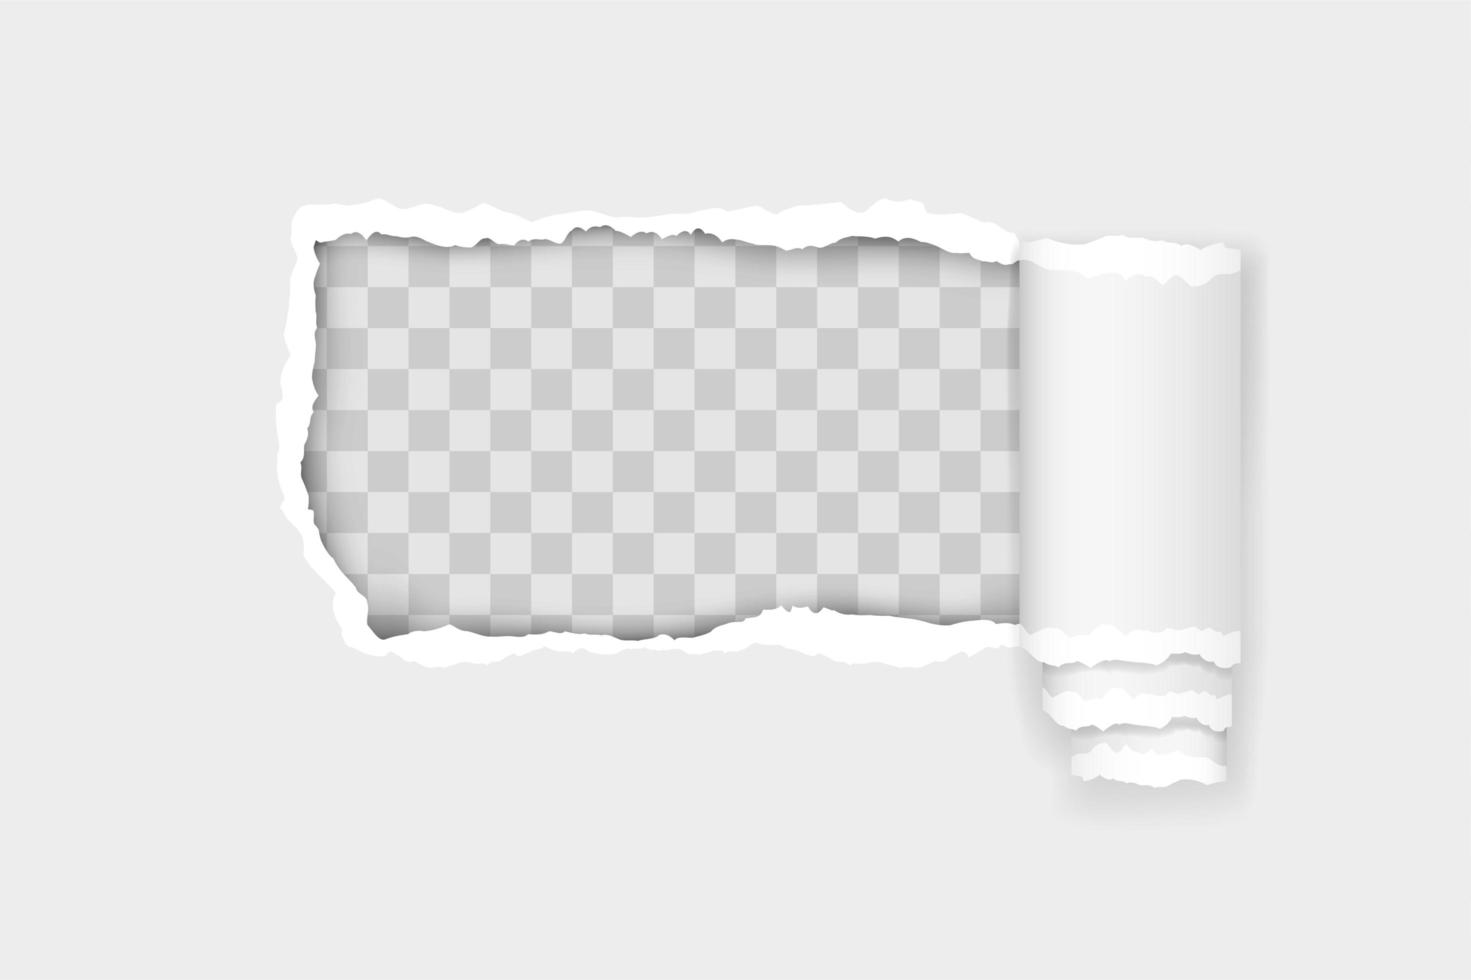 zerrissene Papierkante für Design mit transparenter Raumschablone vektor